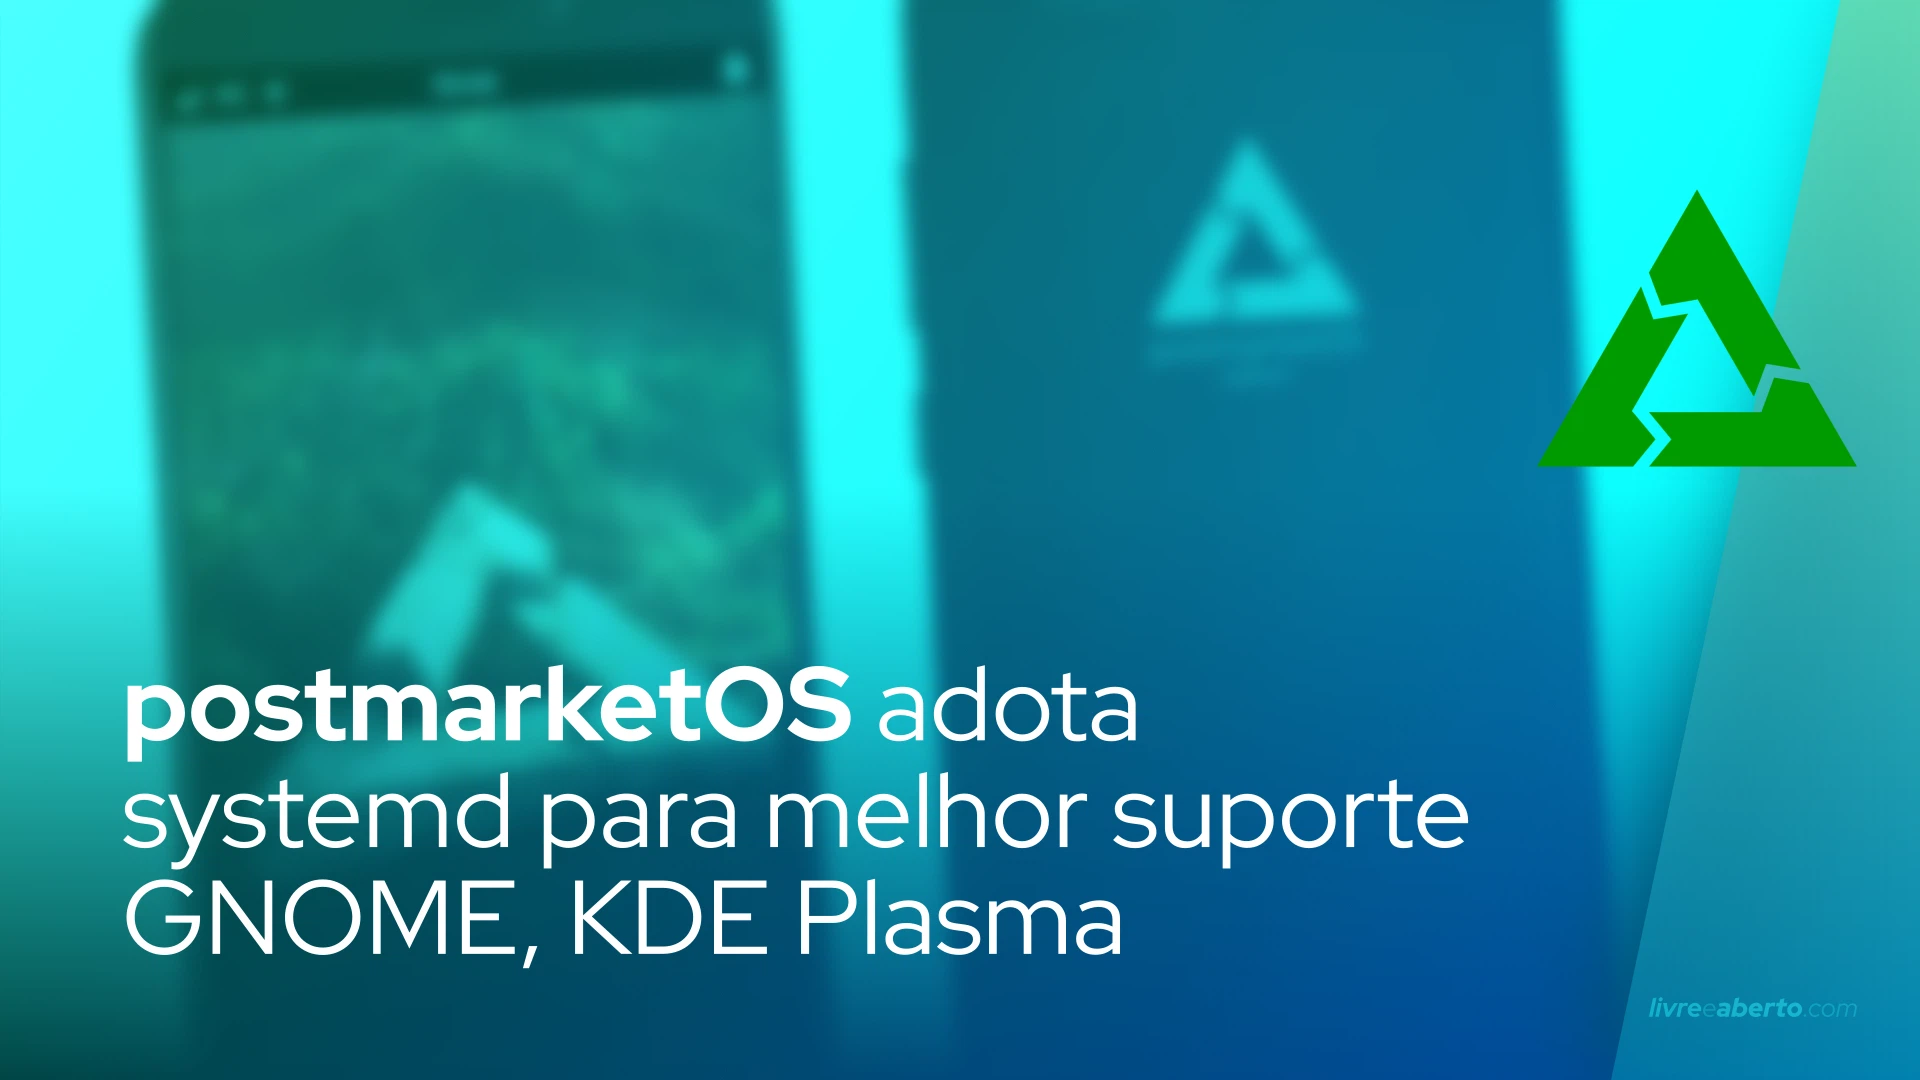 postmarketOS adota systemd para melhor suporte GNOME, KDE Plasma